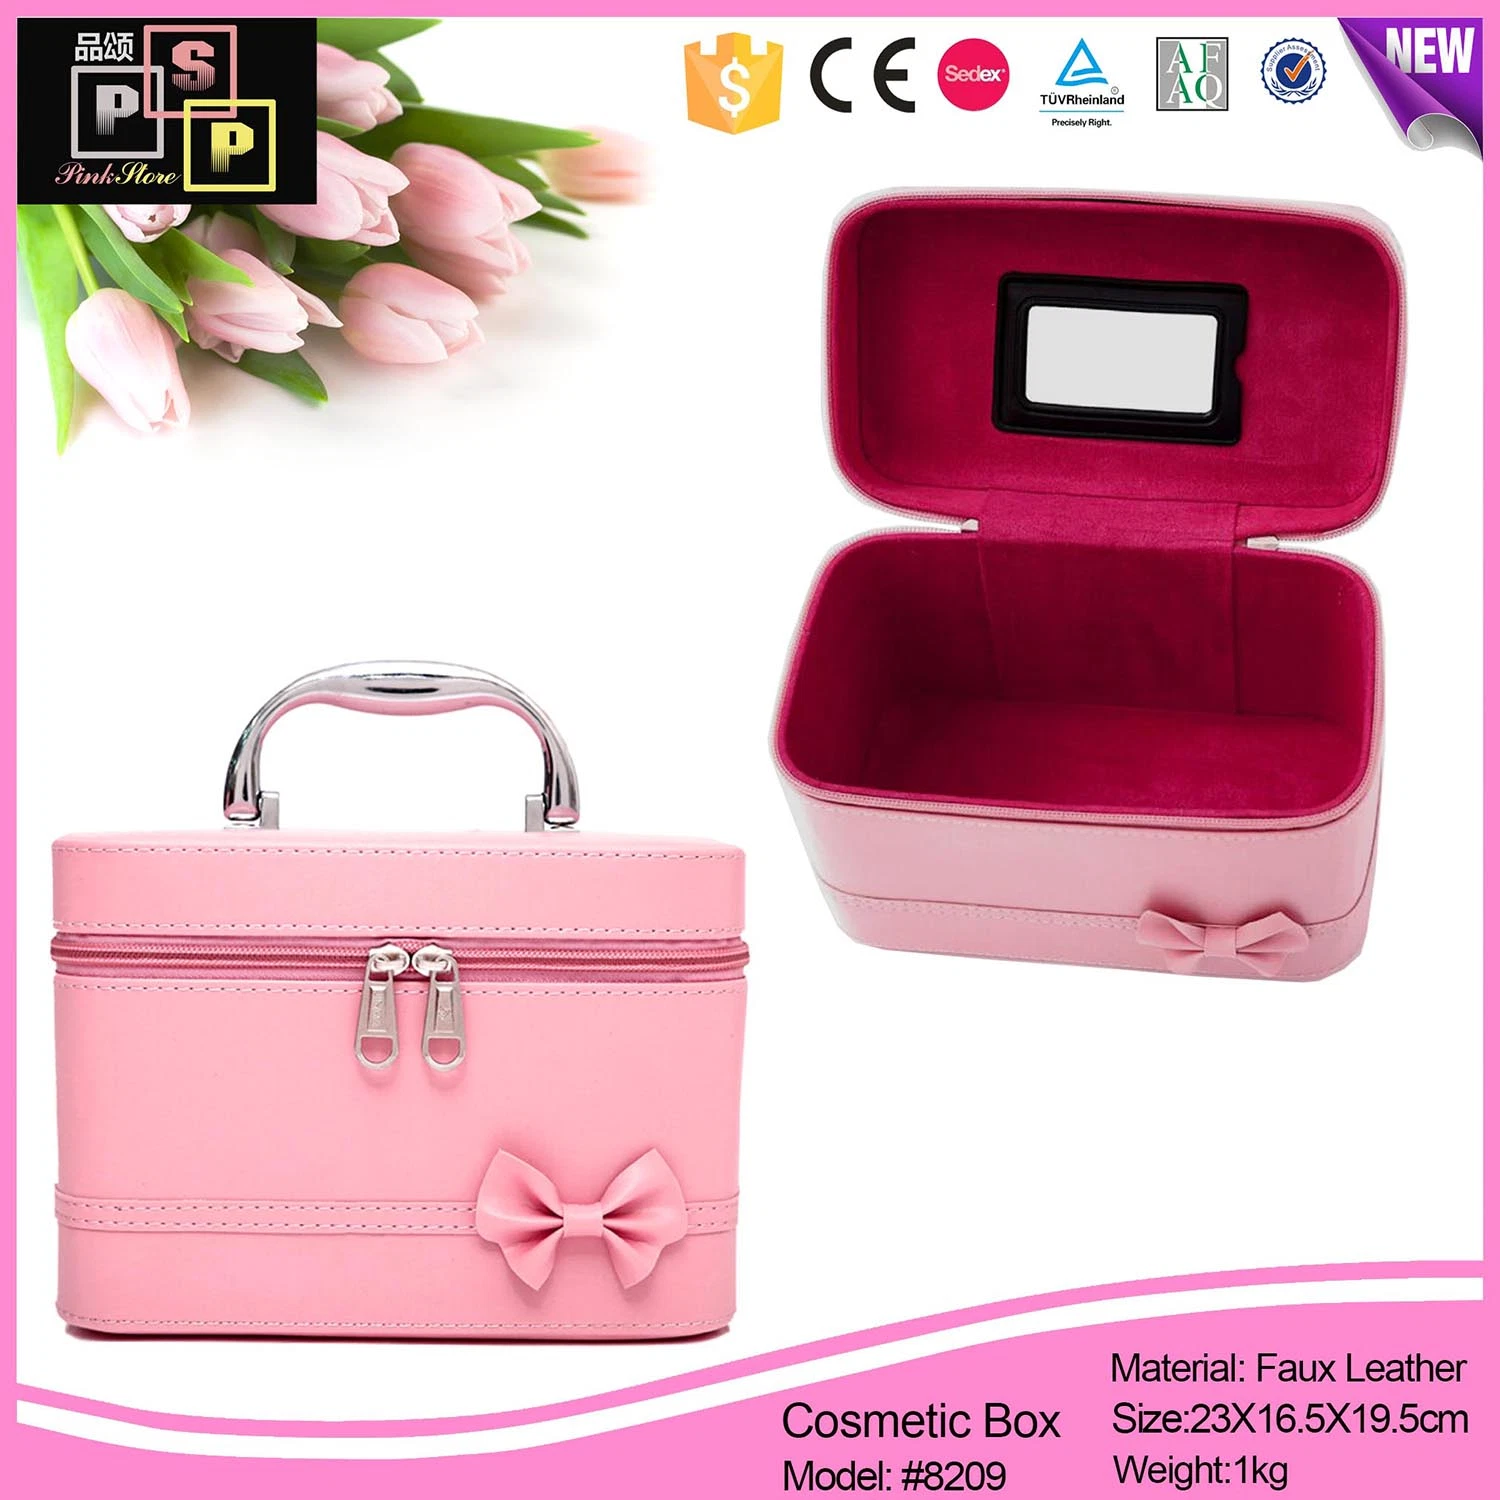 Rosa de lujo bolsas de cosméticos de los casos el kit de maquillaje maquillaje de viaje en tren caso Box (8209)